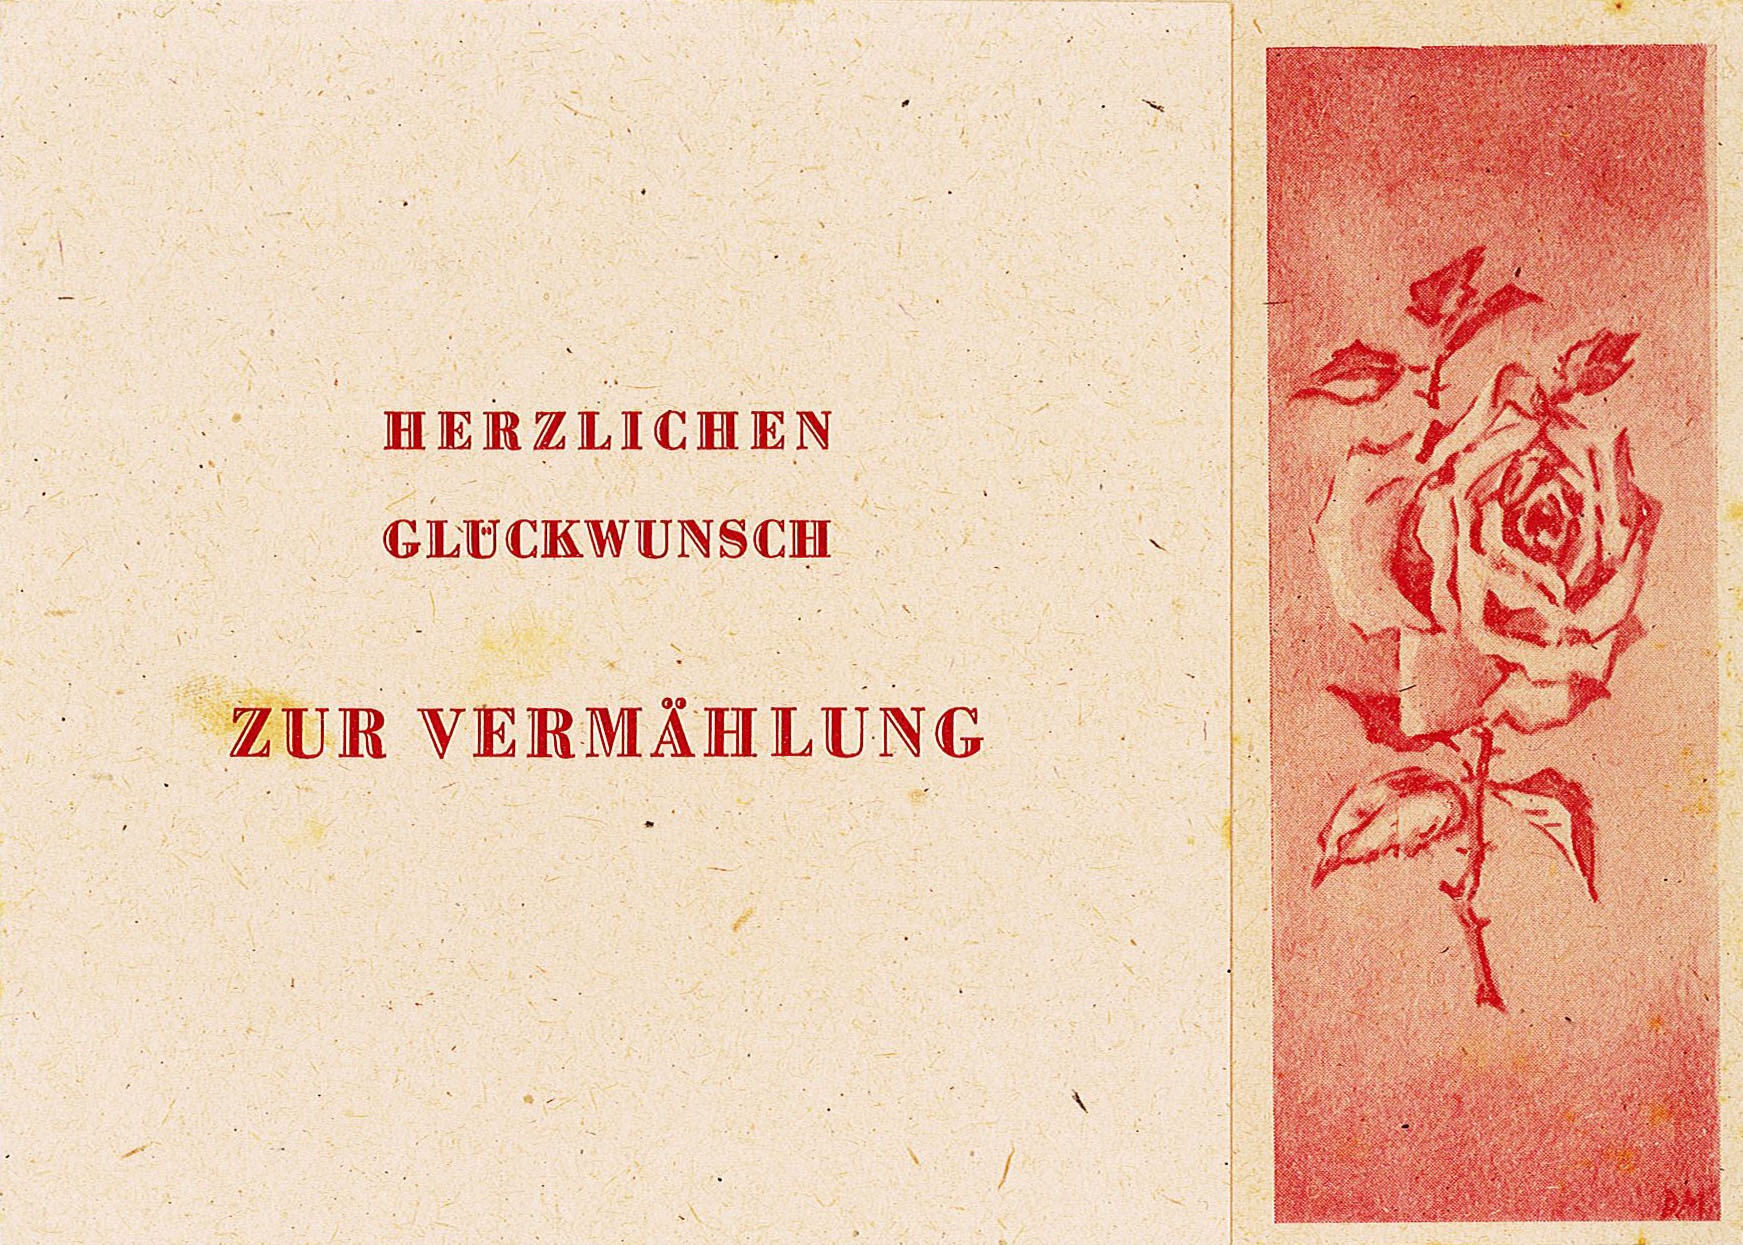 Glückwunschkarte zur Hochzeit an Ingeborg und Theodor Siebert von E. Mangelsdorf unf Familie Heinz Köhrer, 1948 (Museum Wolmirstedt RR-F)